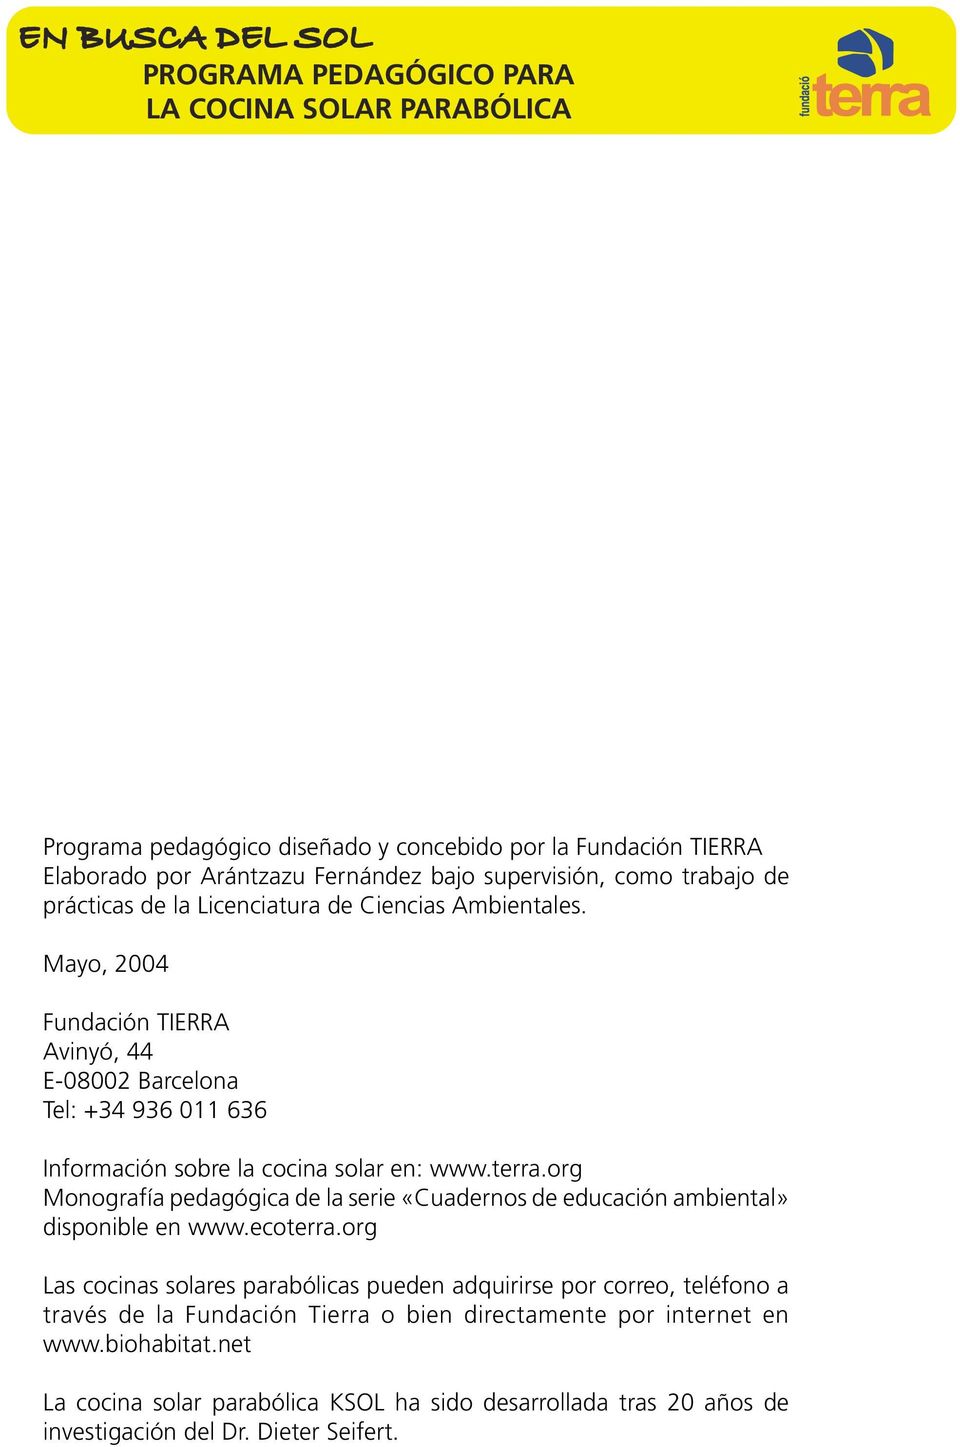 Mayo, 2004 Fundación TIERRA Avinyó, 44 E-08002 Barcelona Tel: +34 936 011 636 Información sobre la cocina solar en: www.terra.